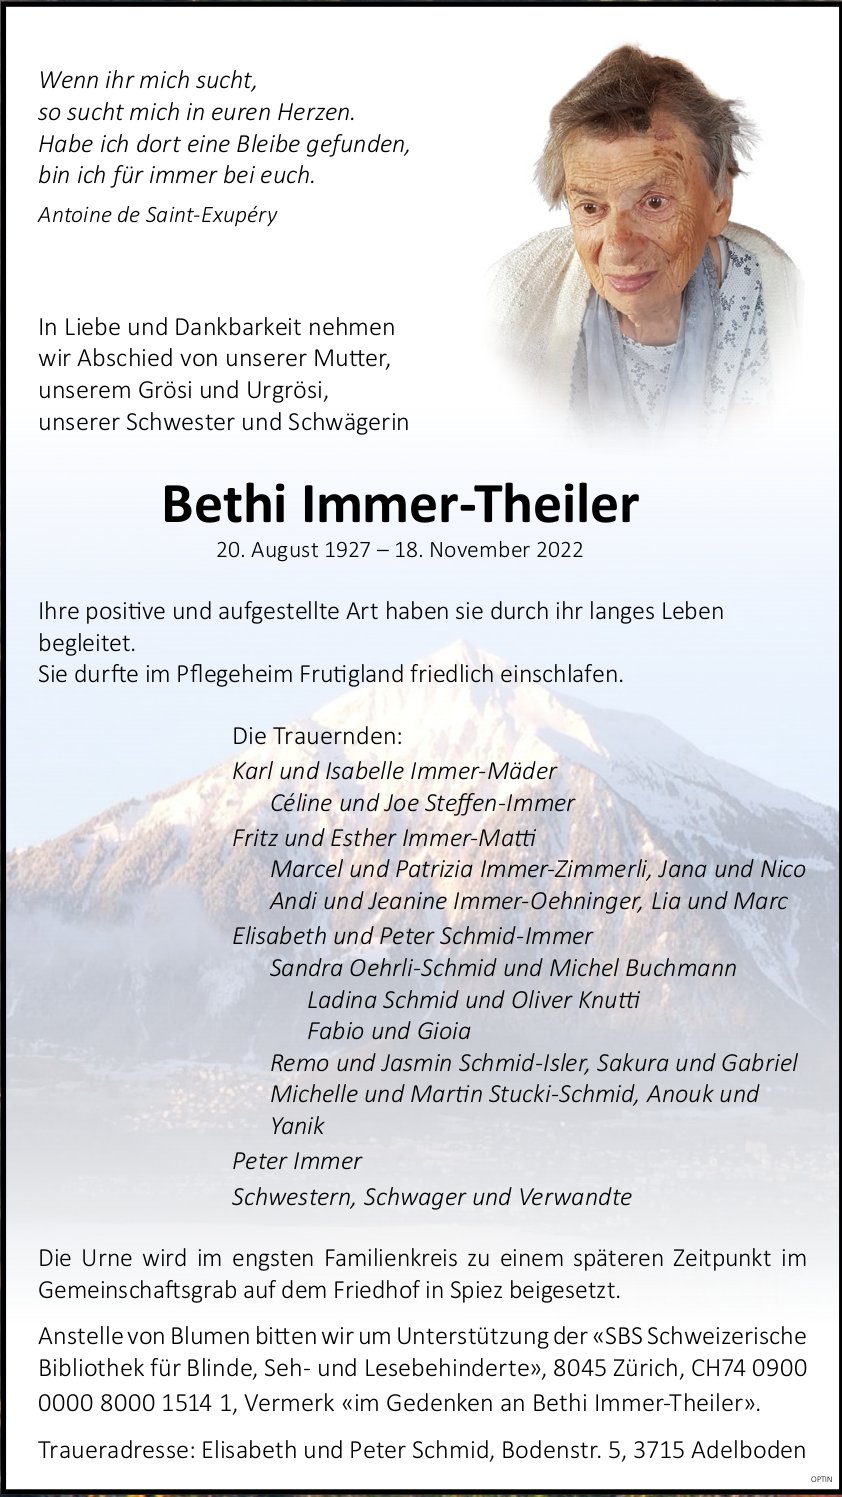 Bethi Immer-Theiler, November 2022 / TA